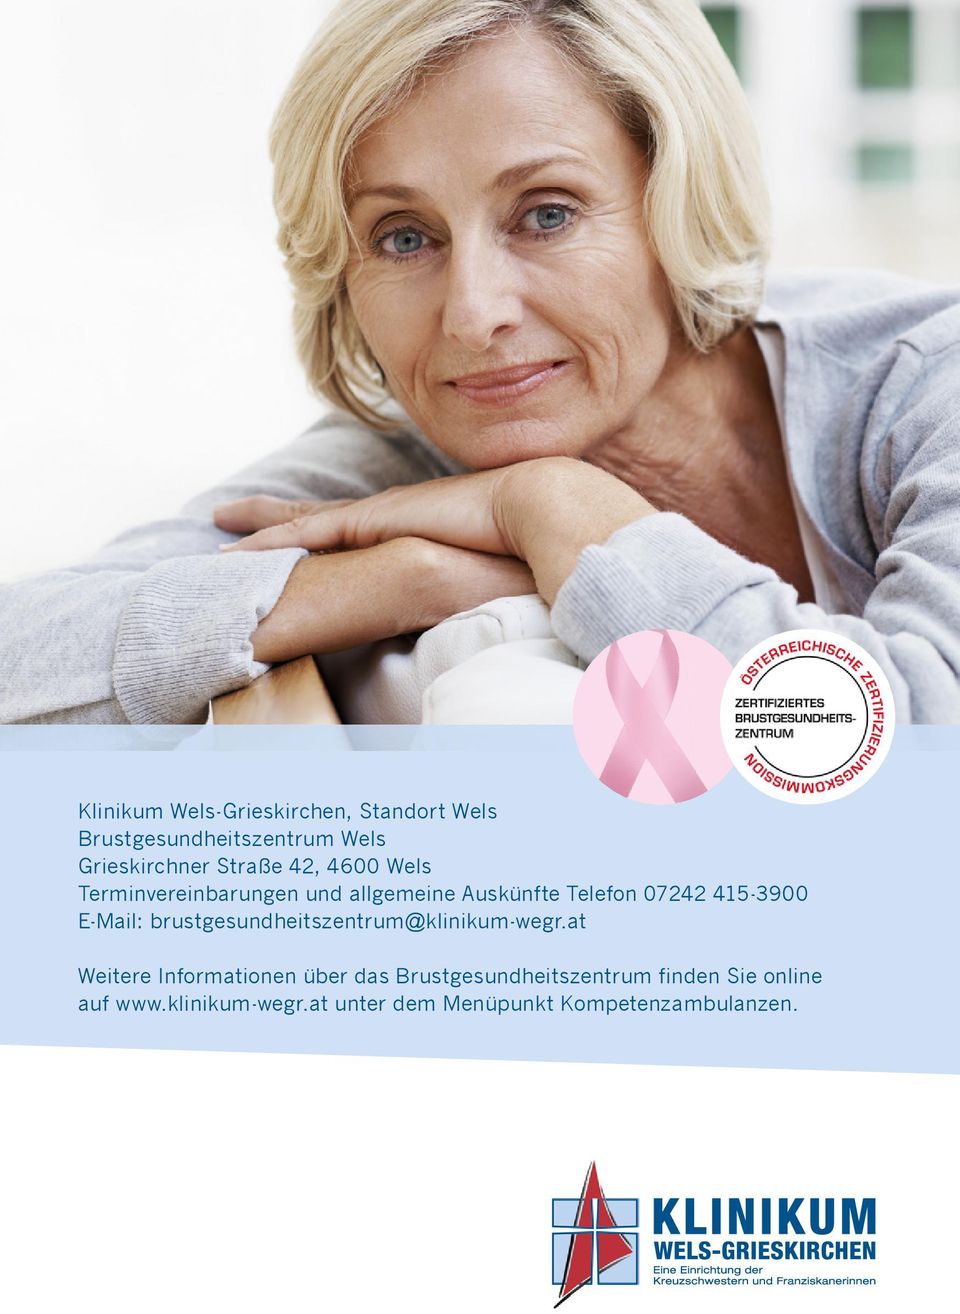 E-Mail: brustgesundheitszentrum@klinikum-wegr.